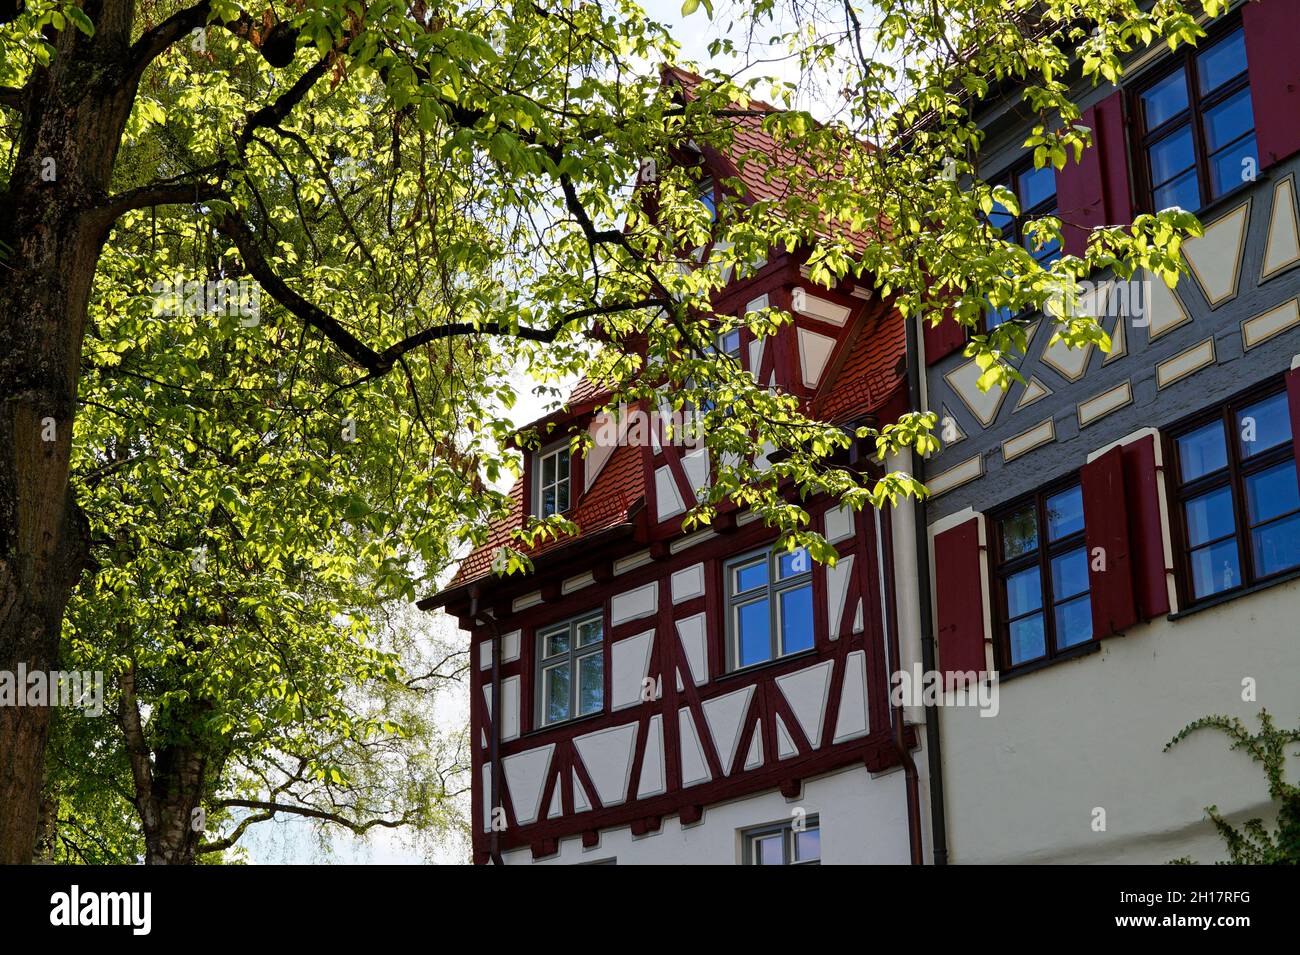 Une belle maison à pans de bois lors d'une journée ensoleillée de printemps dans la ville allemande d'Ulm (Allemagne) Banque D'Images